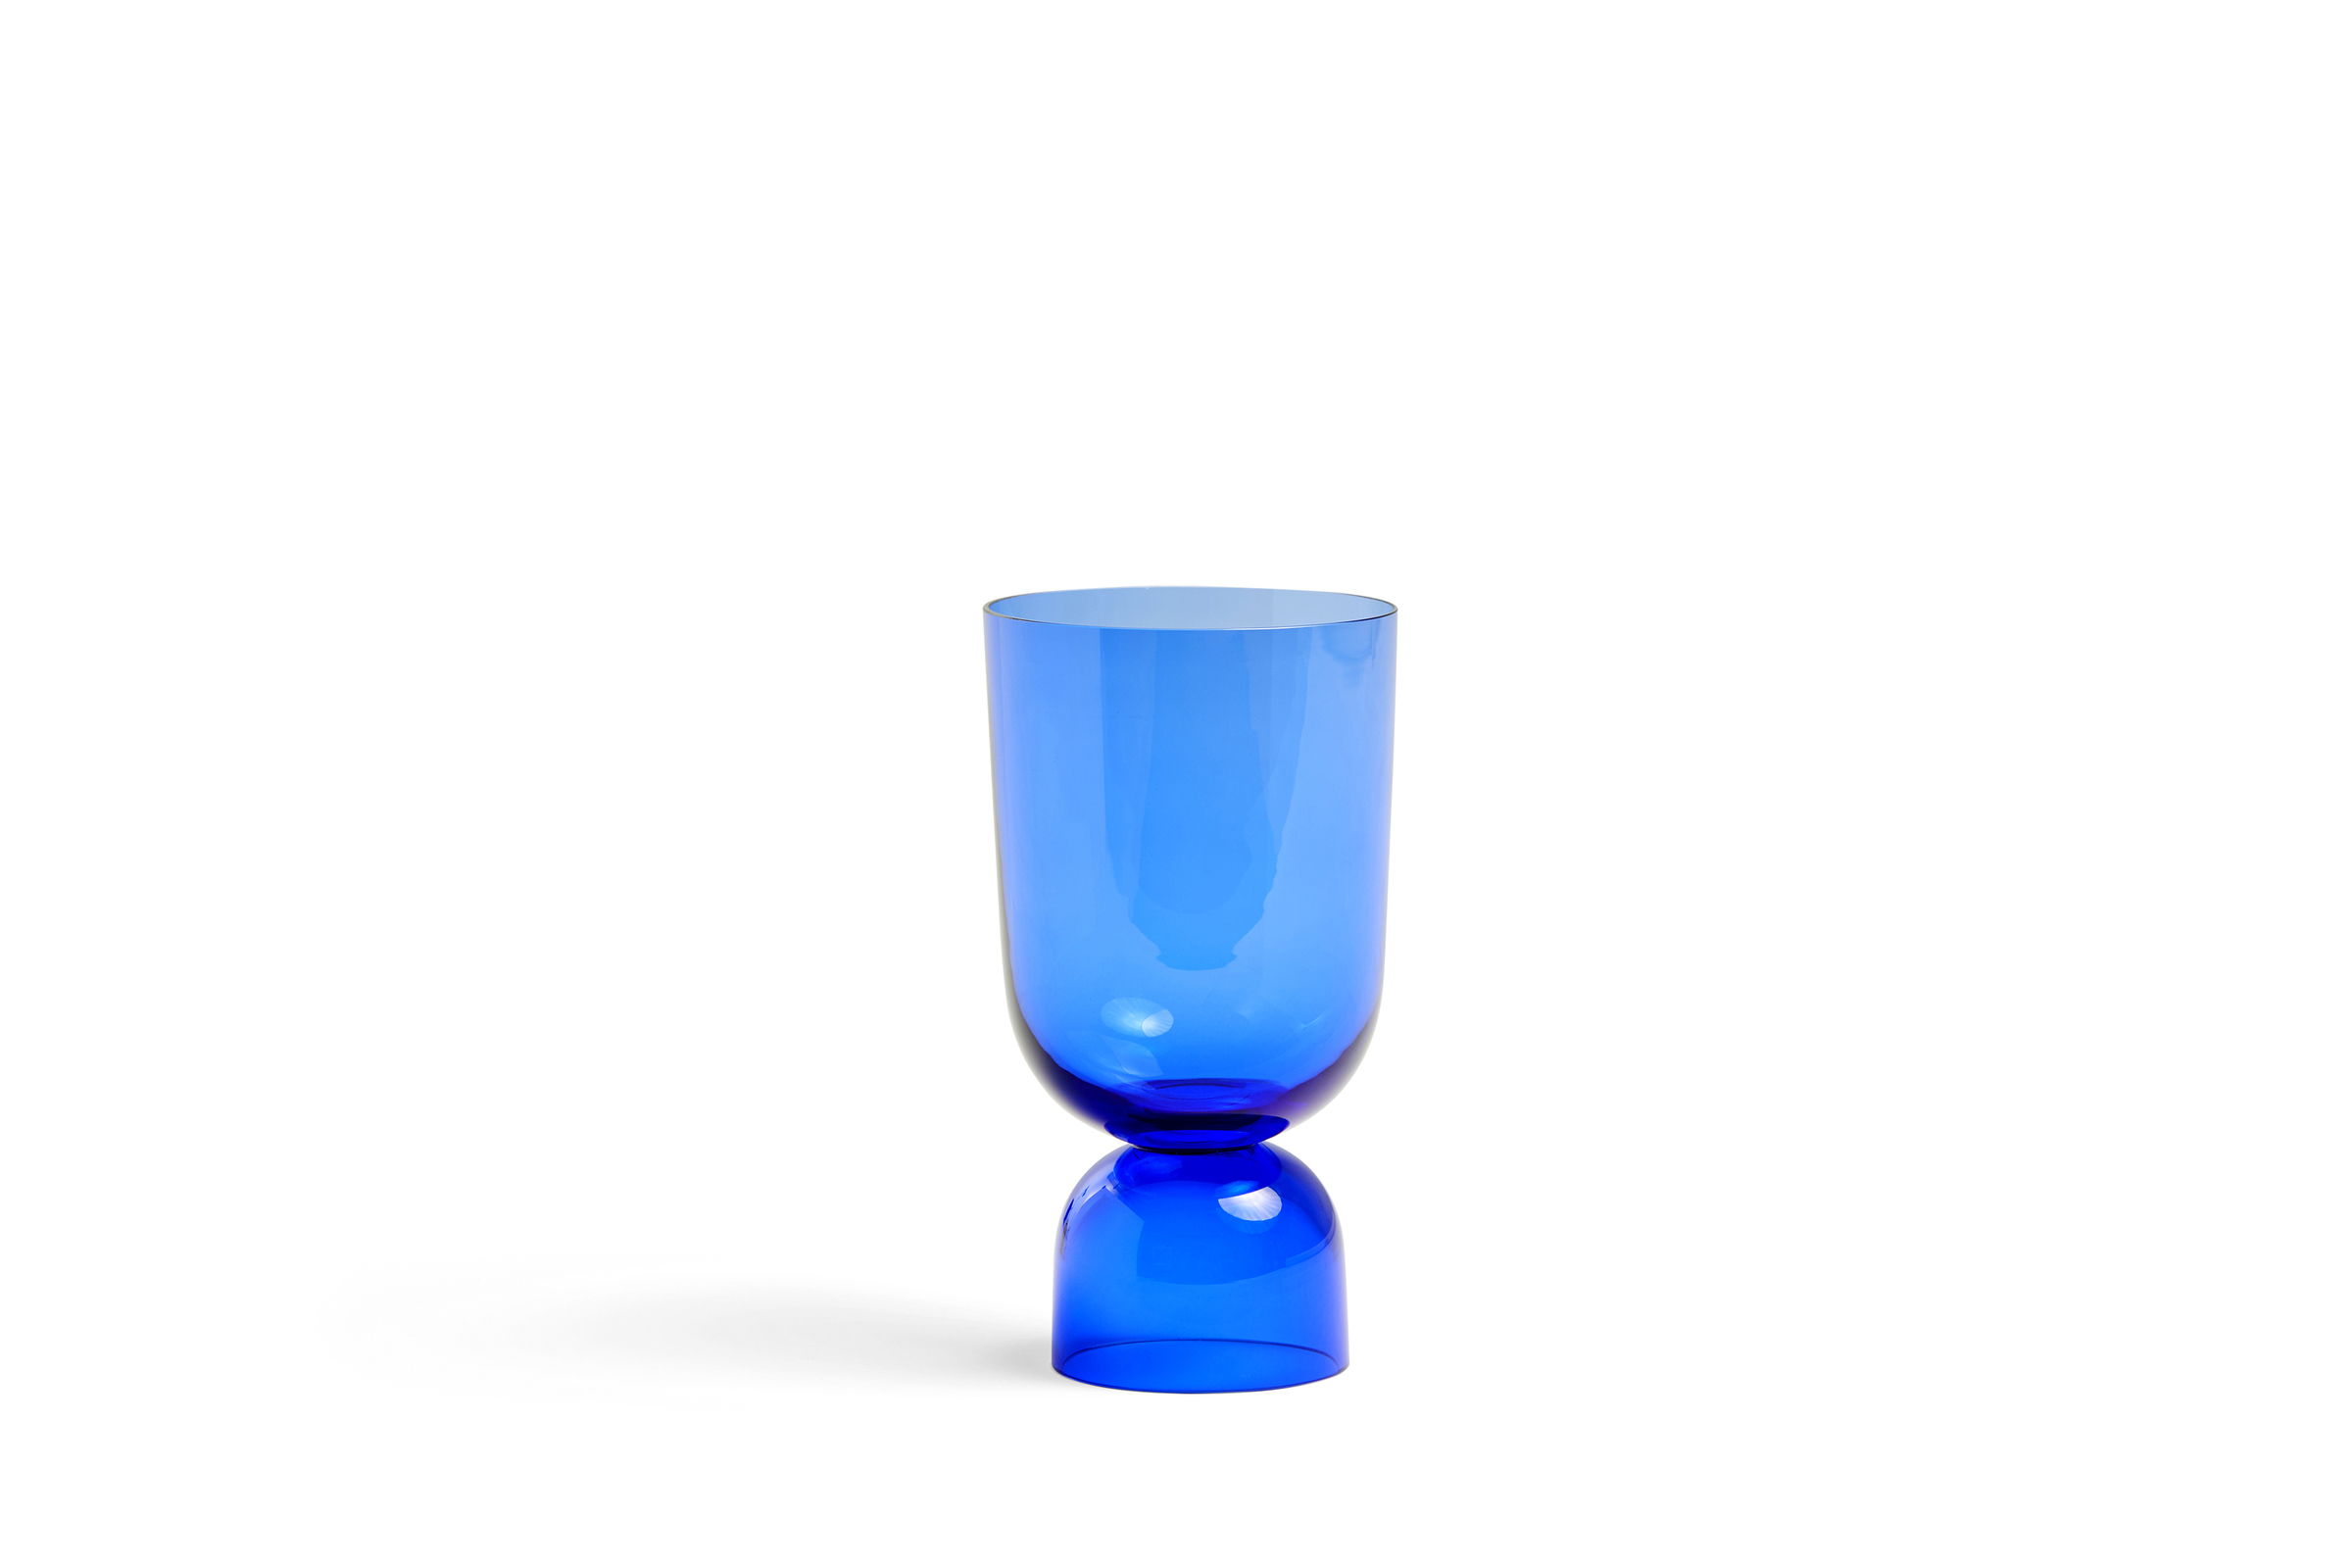 HAY l BOTTOMS UP VASE 乾杯玻璃花瓶– Matter & Co. 北歐設計家居